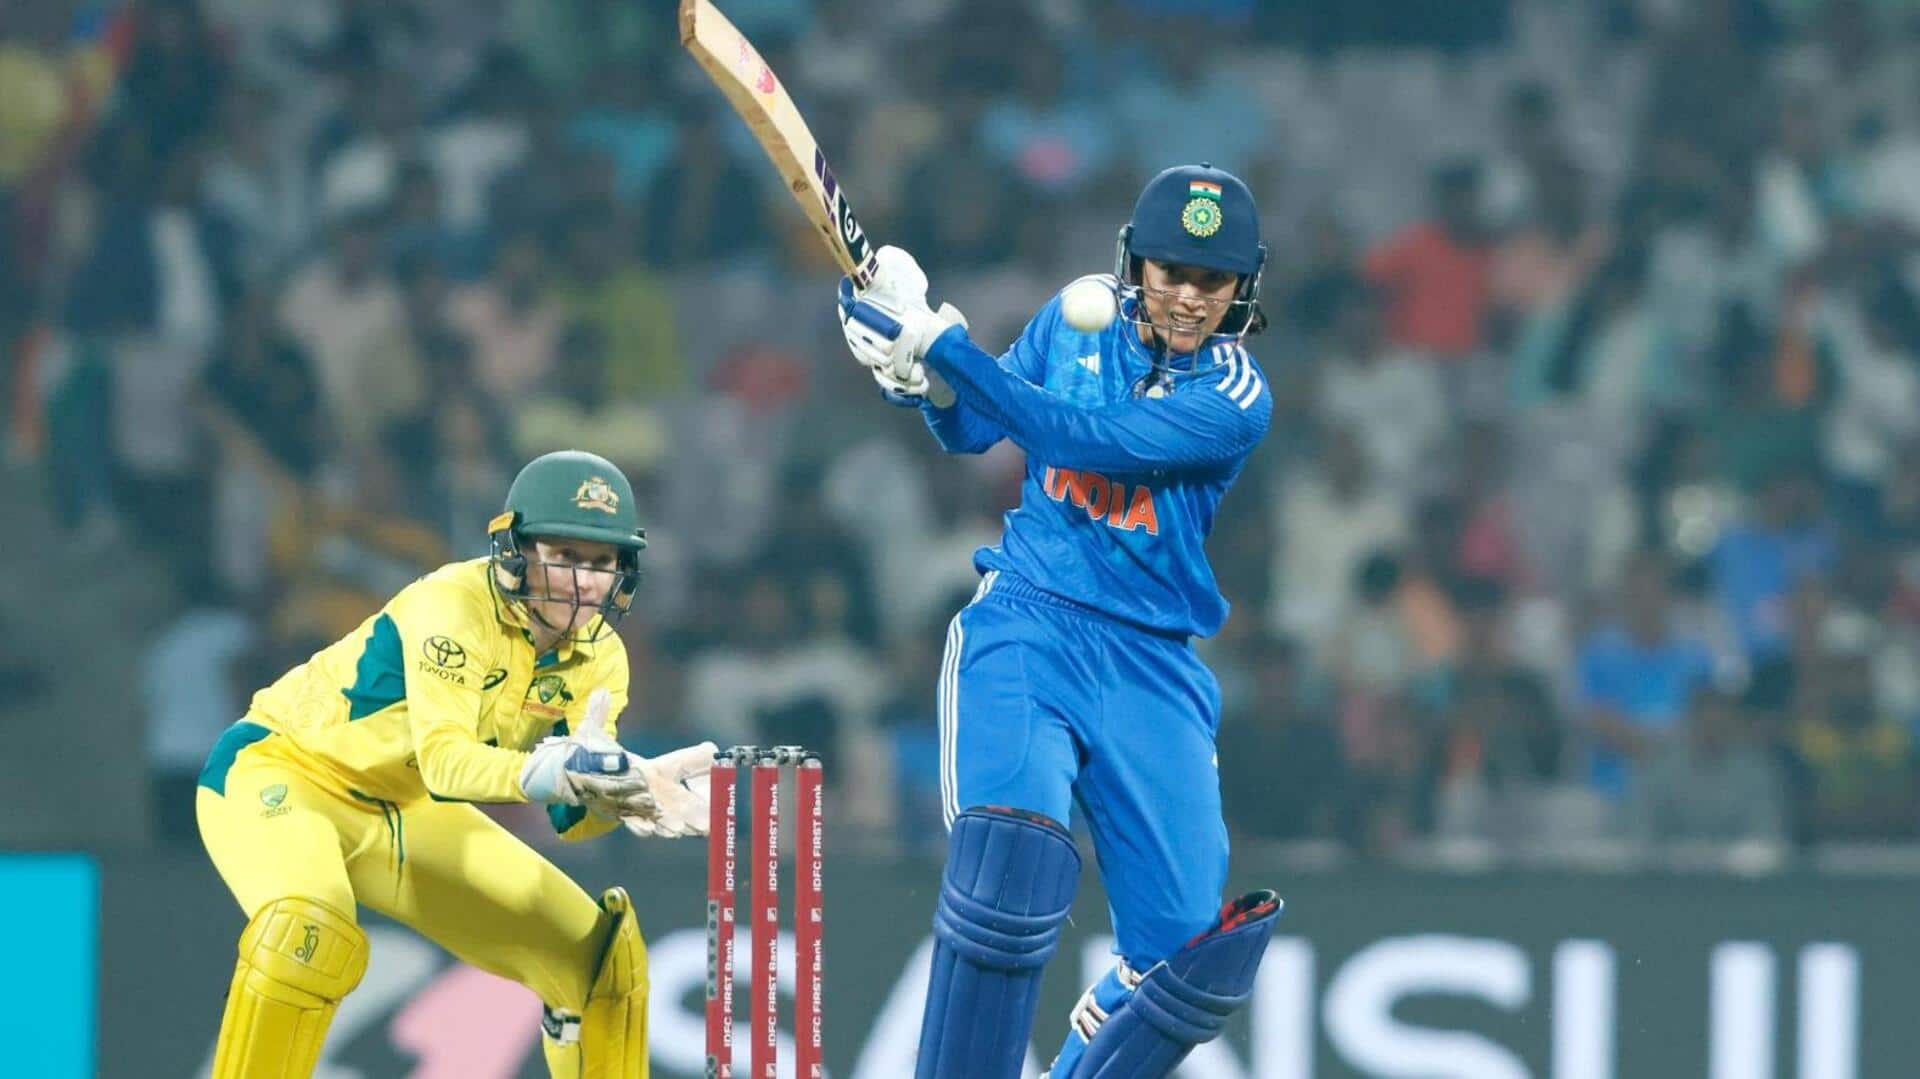 महिला क्रिकेट: दूसरे टी-20 में ऑस्ट्रेलिया ने भारत को 6 विकेट से हराया, ये बने रिकॉर्ड्स 